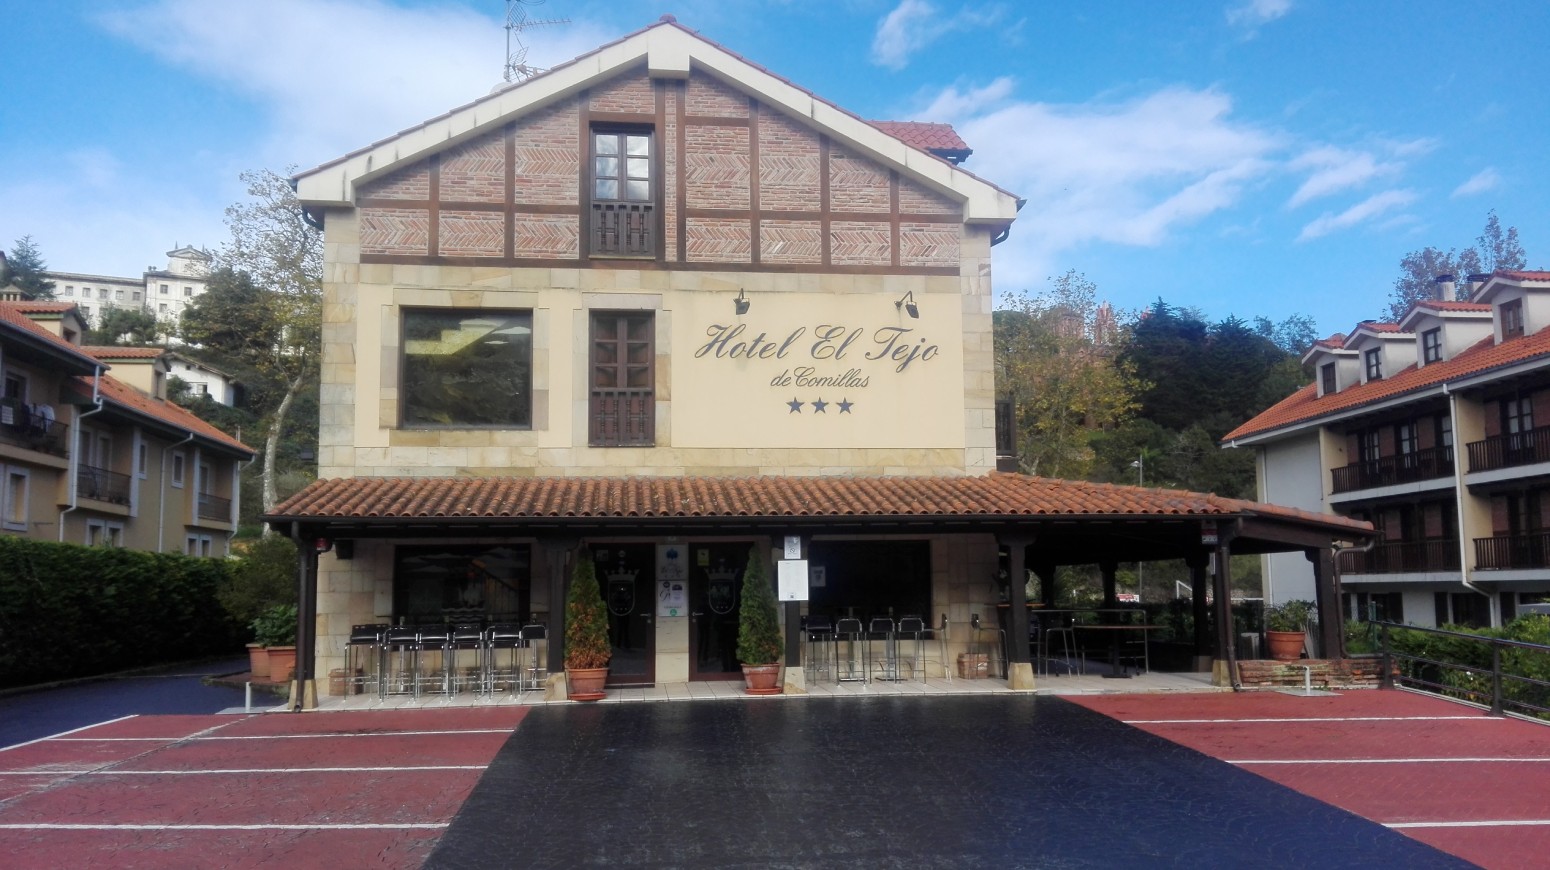 Foto del Hotel El Tejo